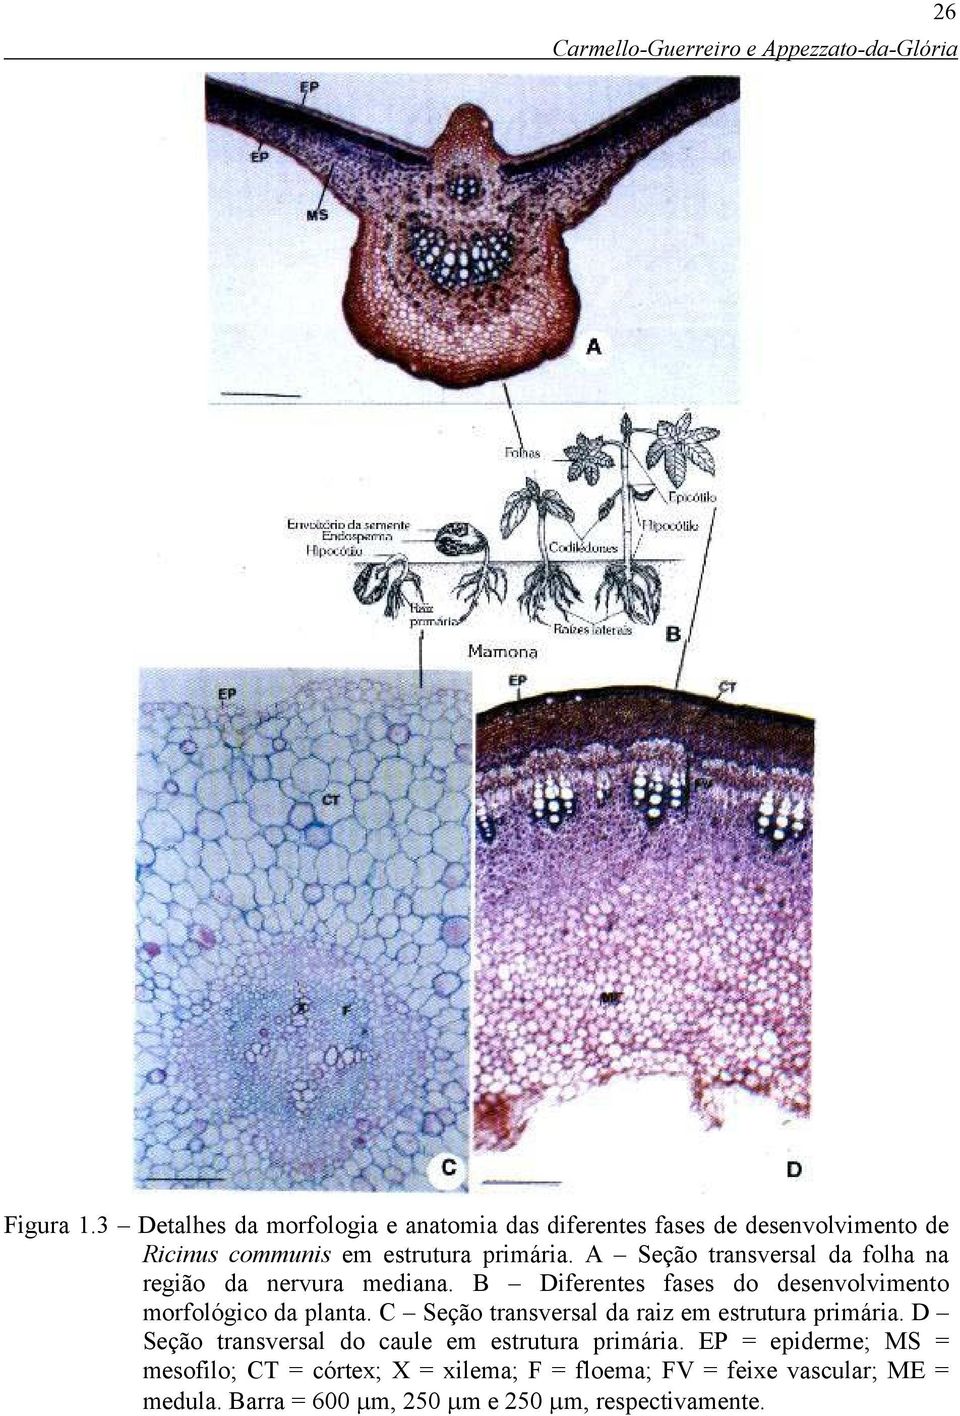 A Seção transversal da folha na região da nervura mediana. B Diferentes fases do desenvolvimento morfológico da planta.